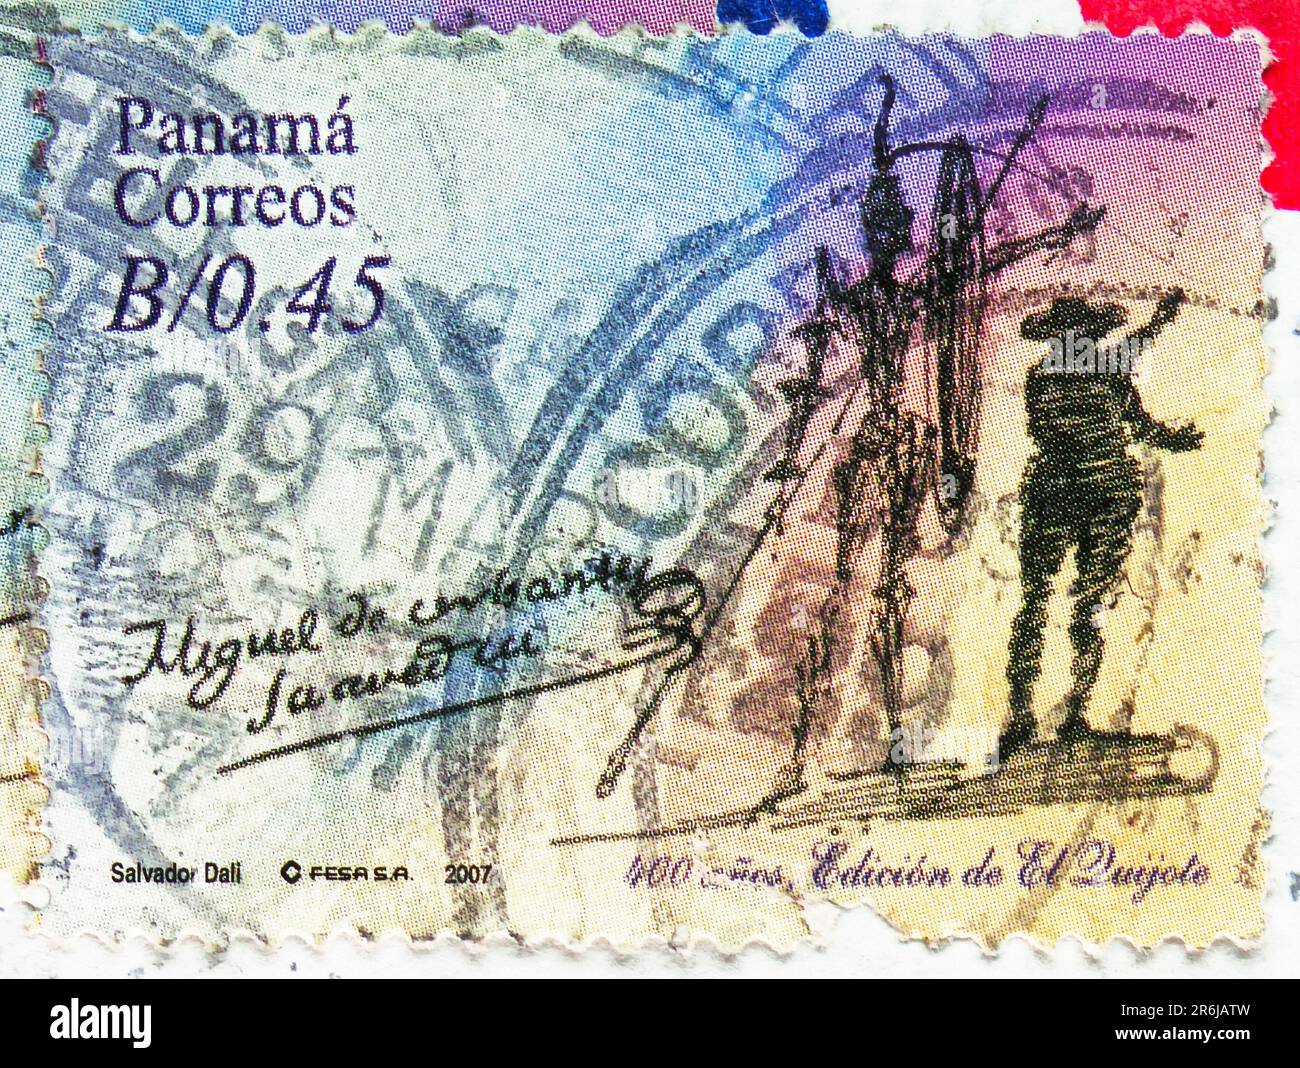 MOSCOU, RUSSIE - JUIN 3 2023: Timbre-poste imprimé au Panama montre Don Quijote et Sancho Pansa, 400th anniversaire de la série Don Quijote, vers 2007 Banque D'Images